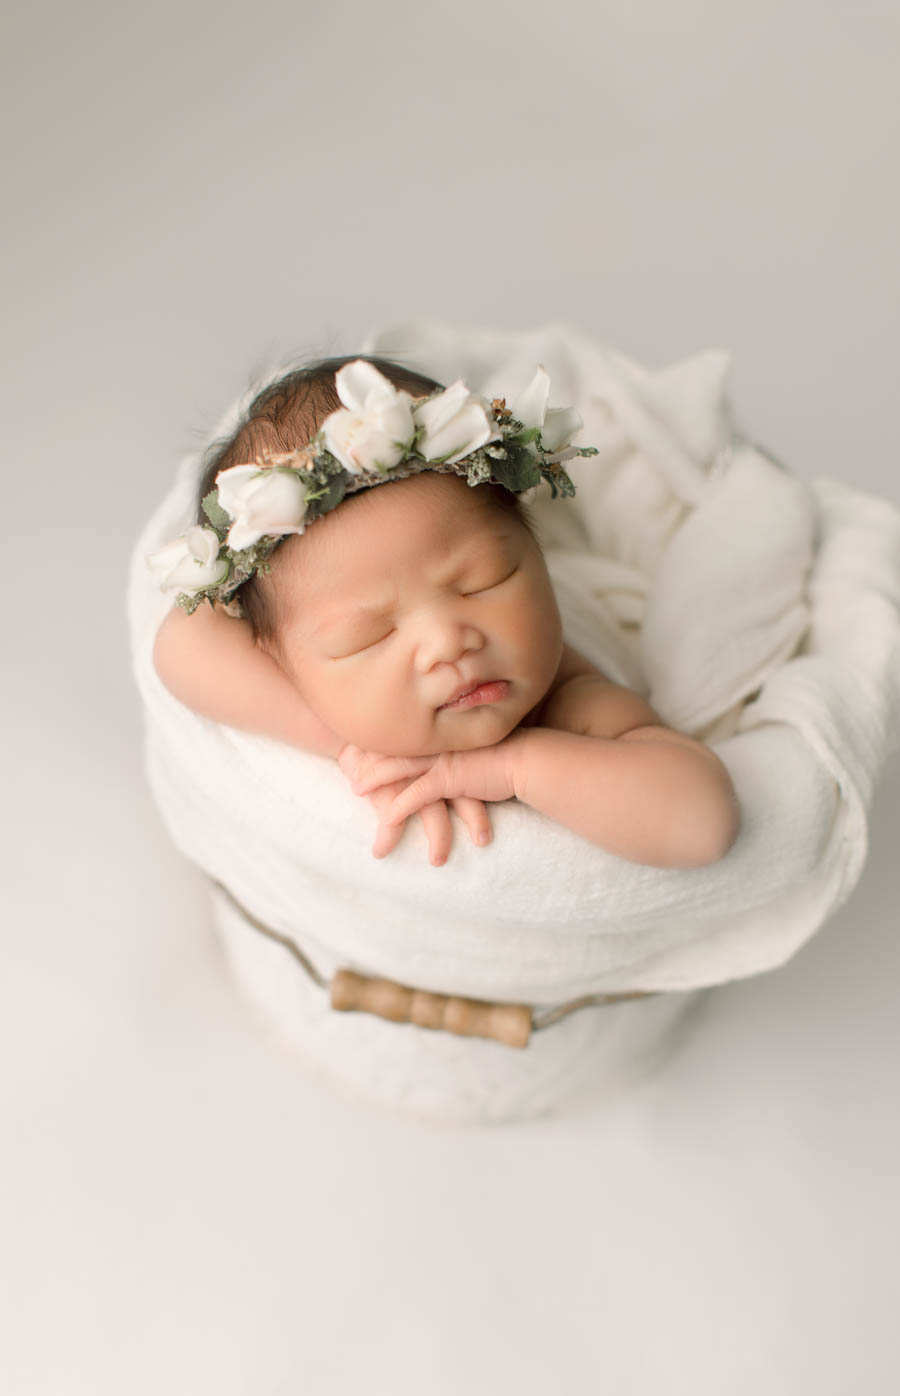 Seattle newborn photos studio with client wardrobe, Seattle mommy blogger, newborn in bucket photo with flower crown